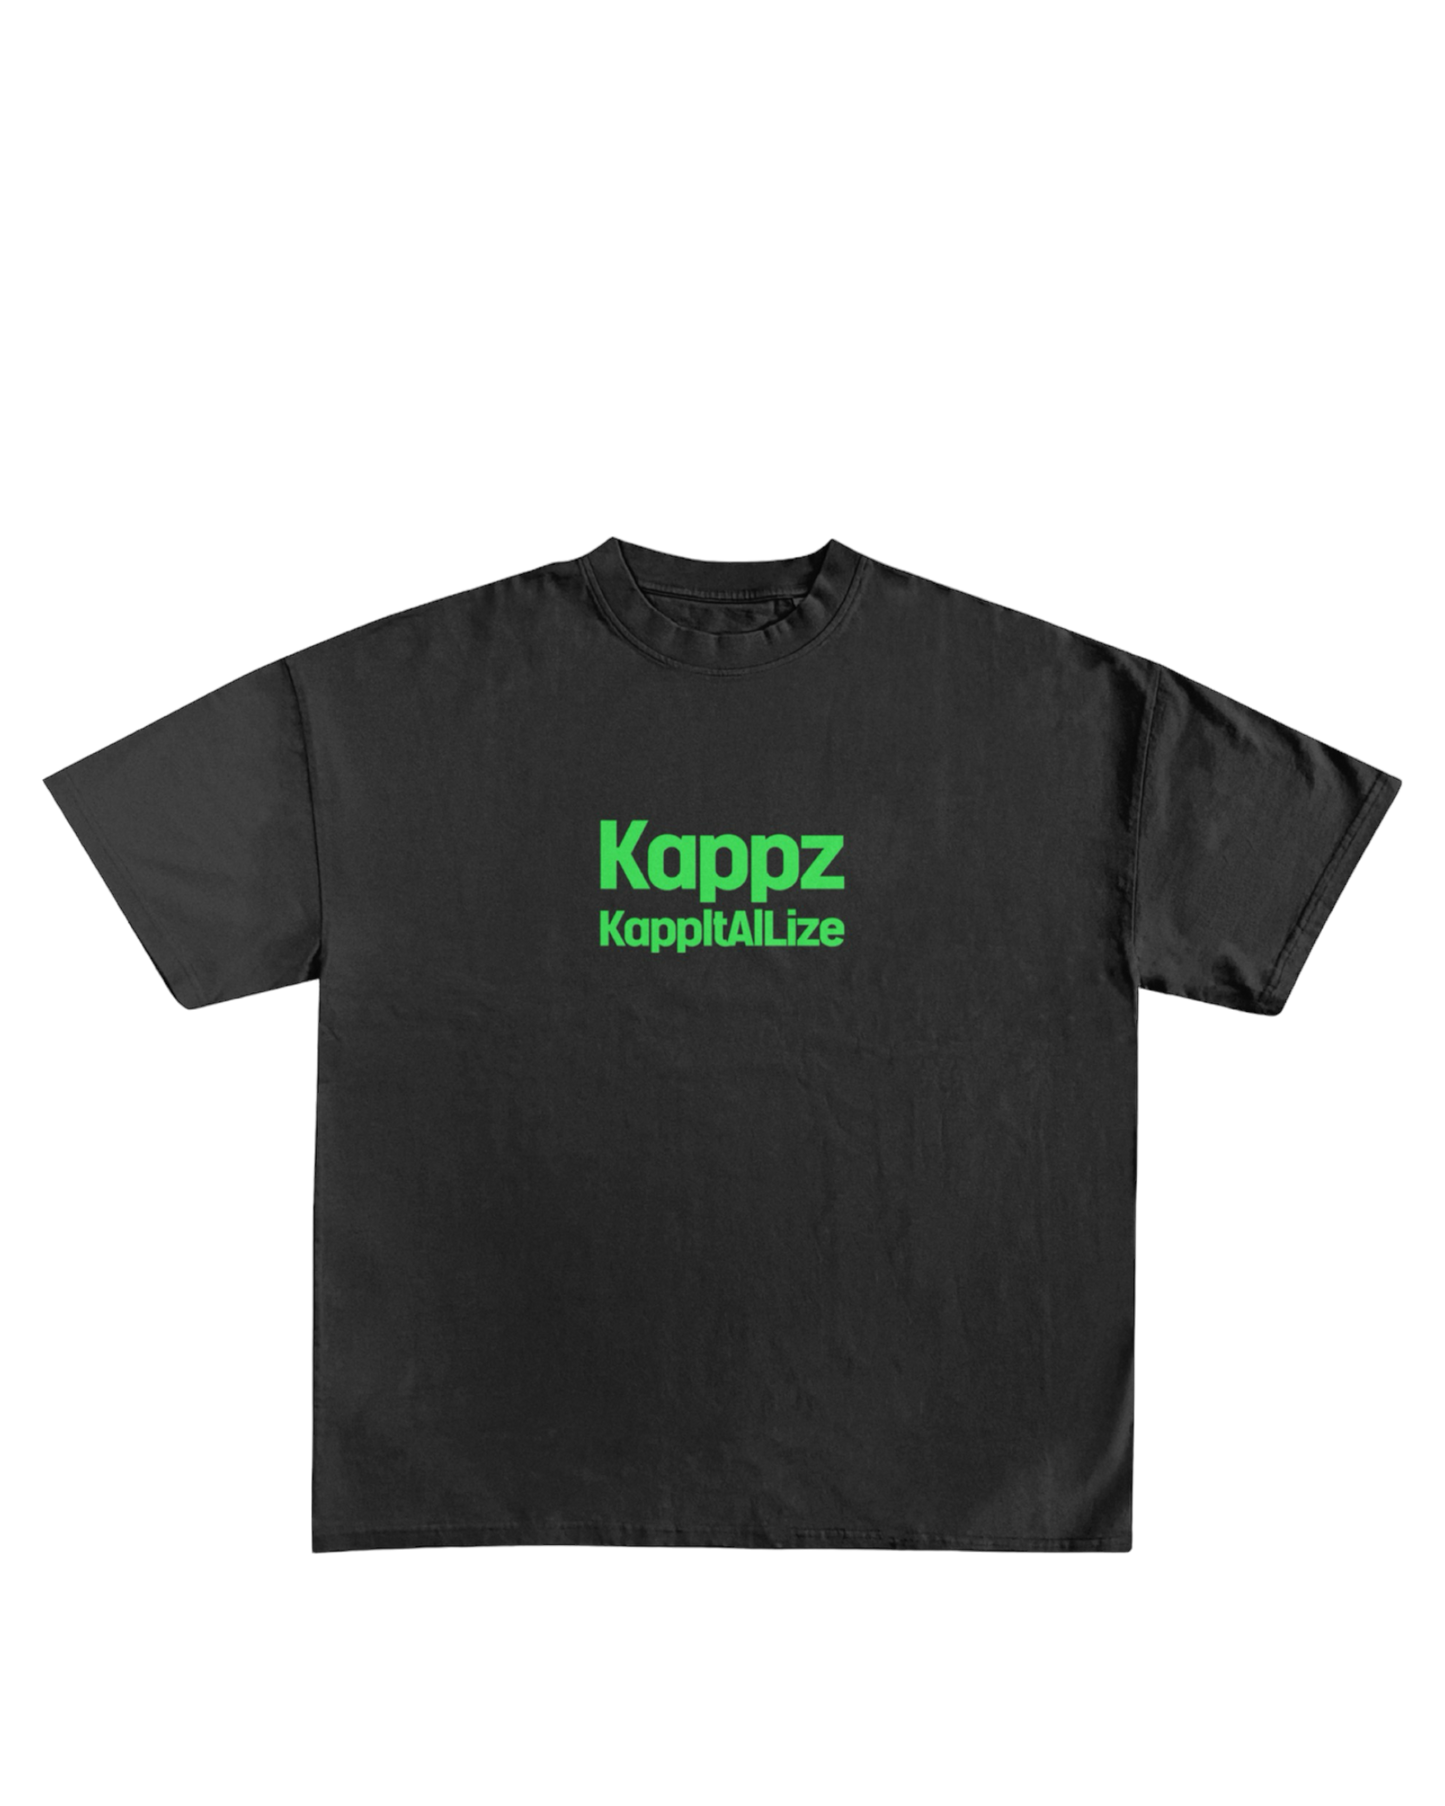 KappGodz KappItAlLize T-shirt